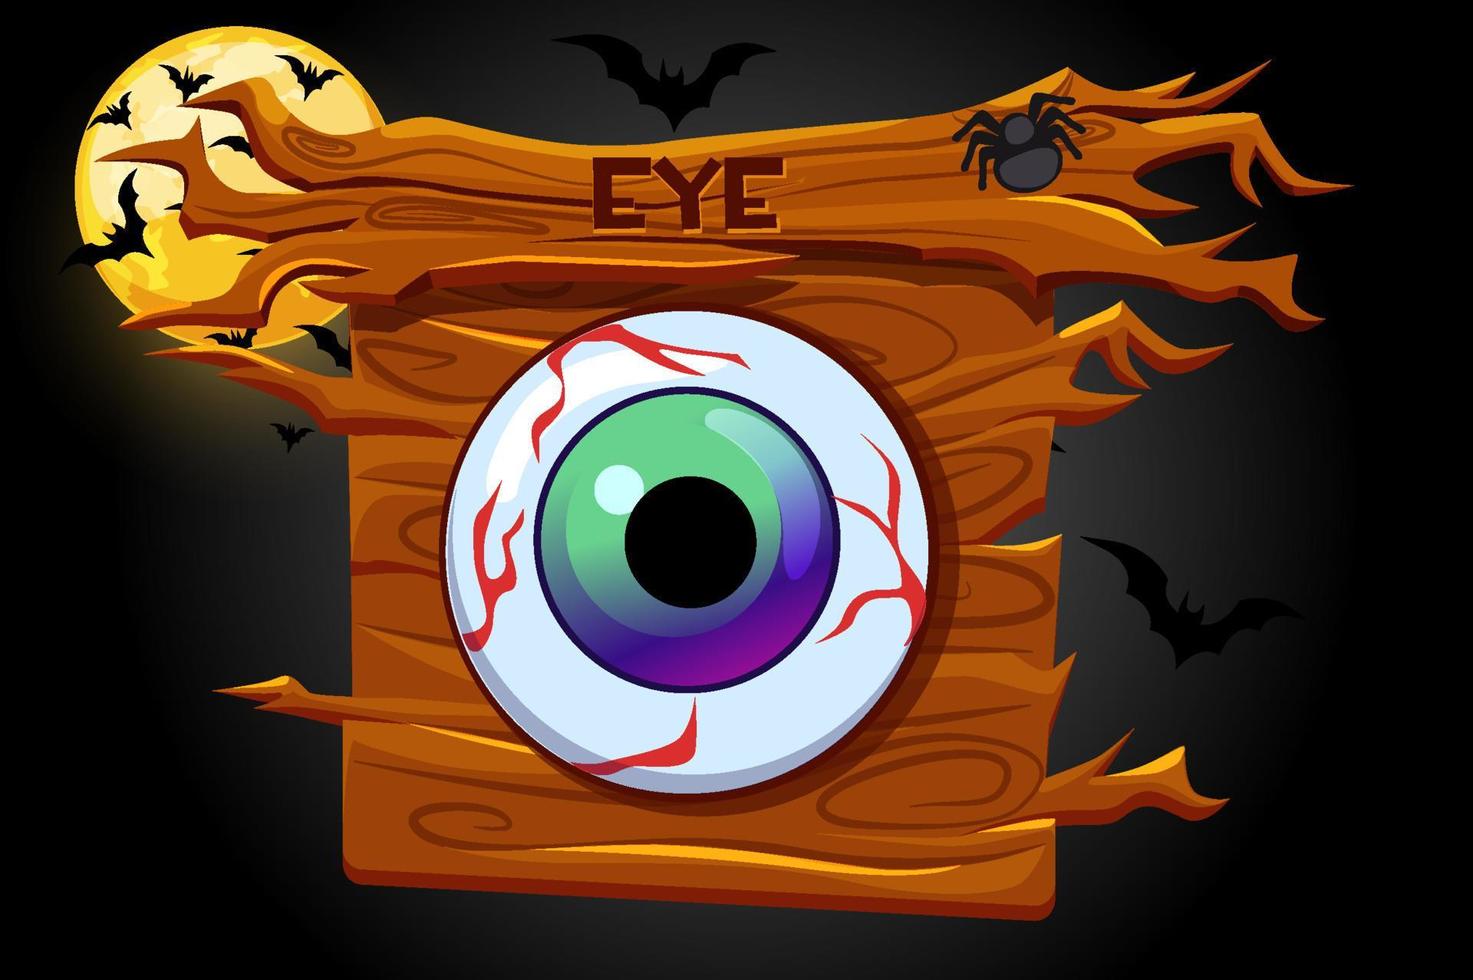 icona occhi di gioco, banner in legno e notte spaventosa. illustrazione vettoriale di palo di legno, luna e pipistrello.